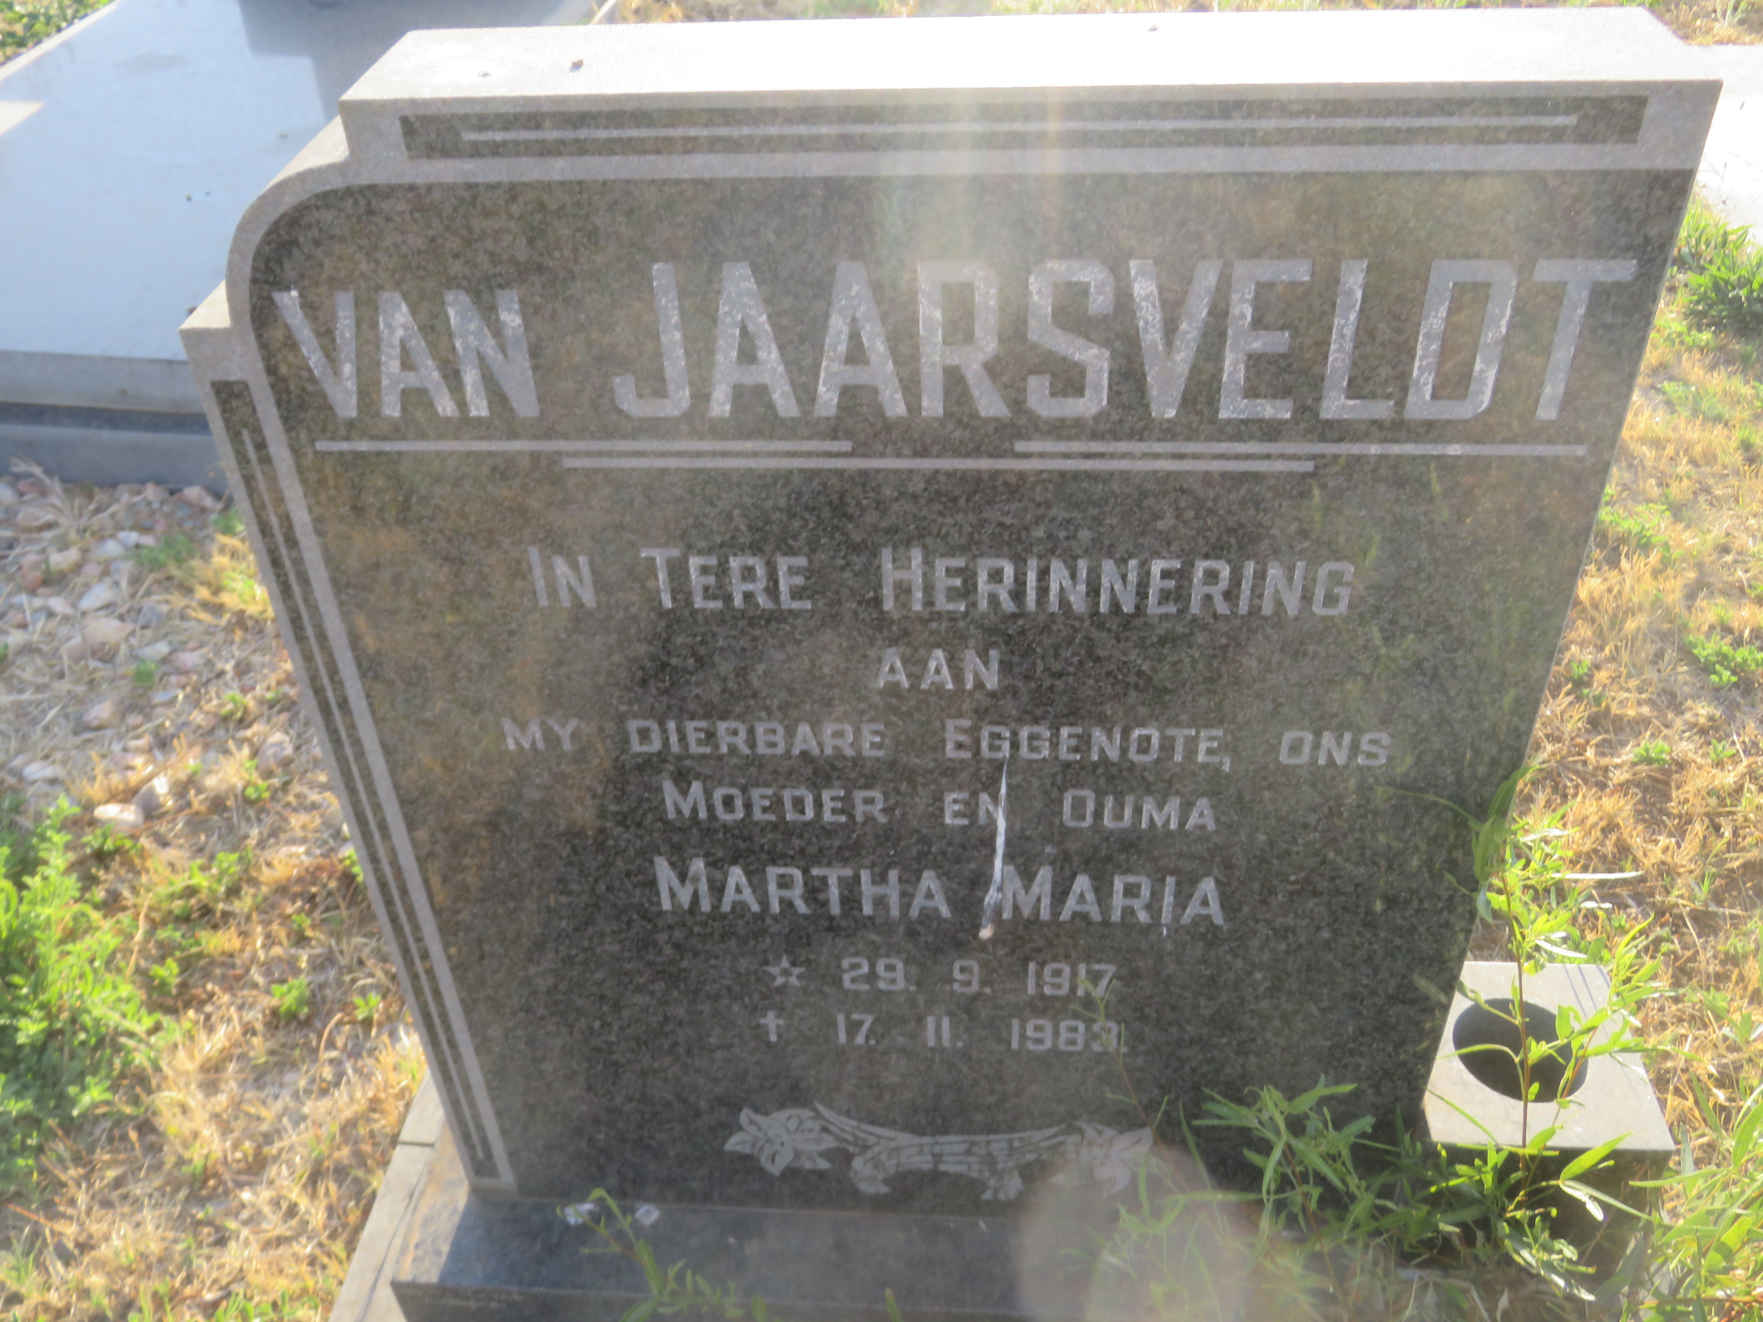 JAARSVELD Martha Maria, van 1917-1983